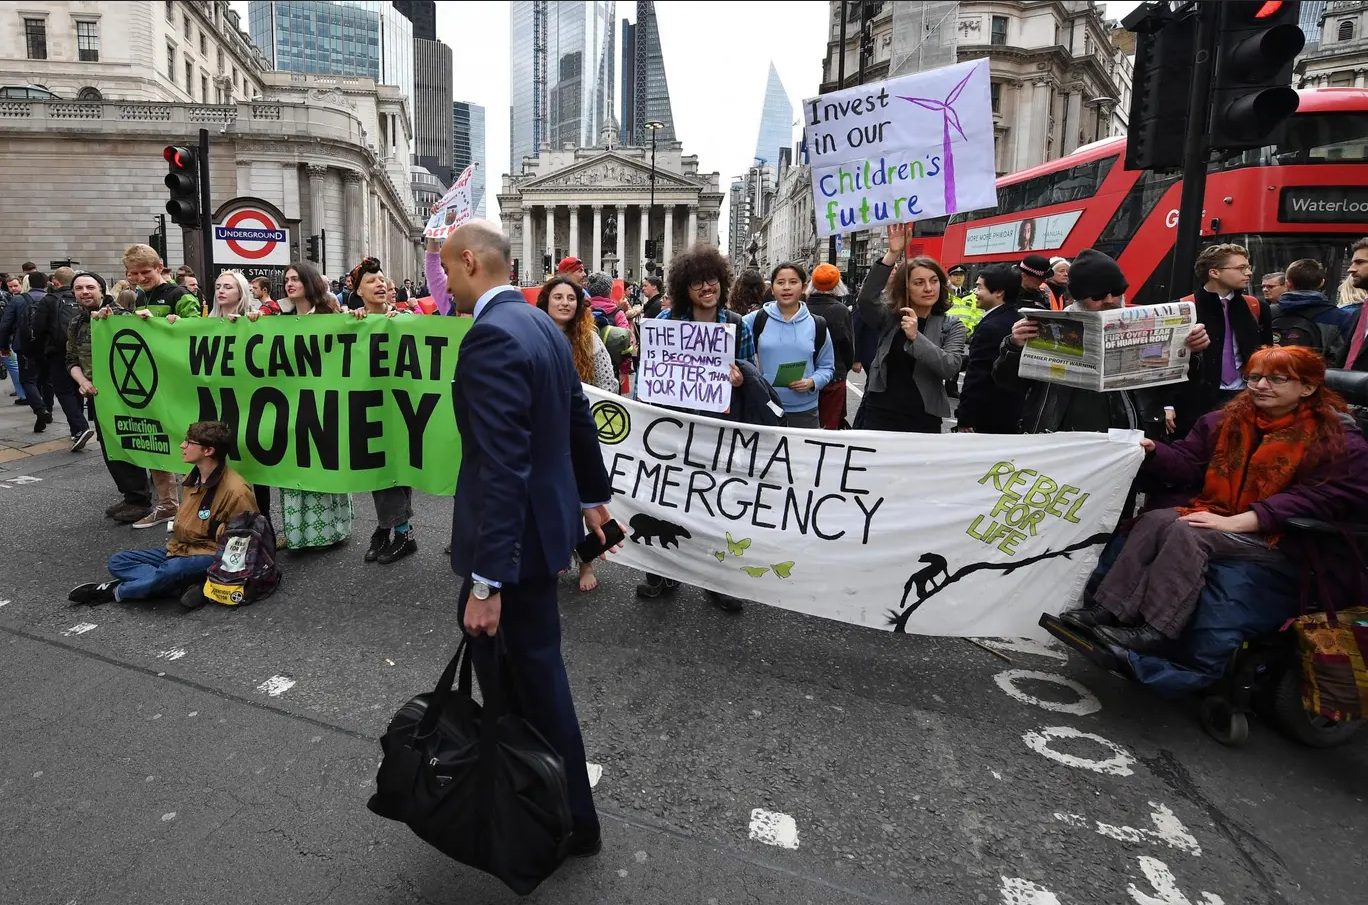 احتجاج نشطاء من حركة "تمرّد ضد الانقراض" على أبواب "بنك إنجلترا" 